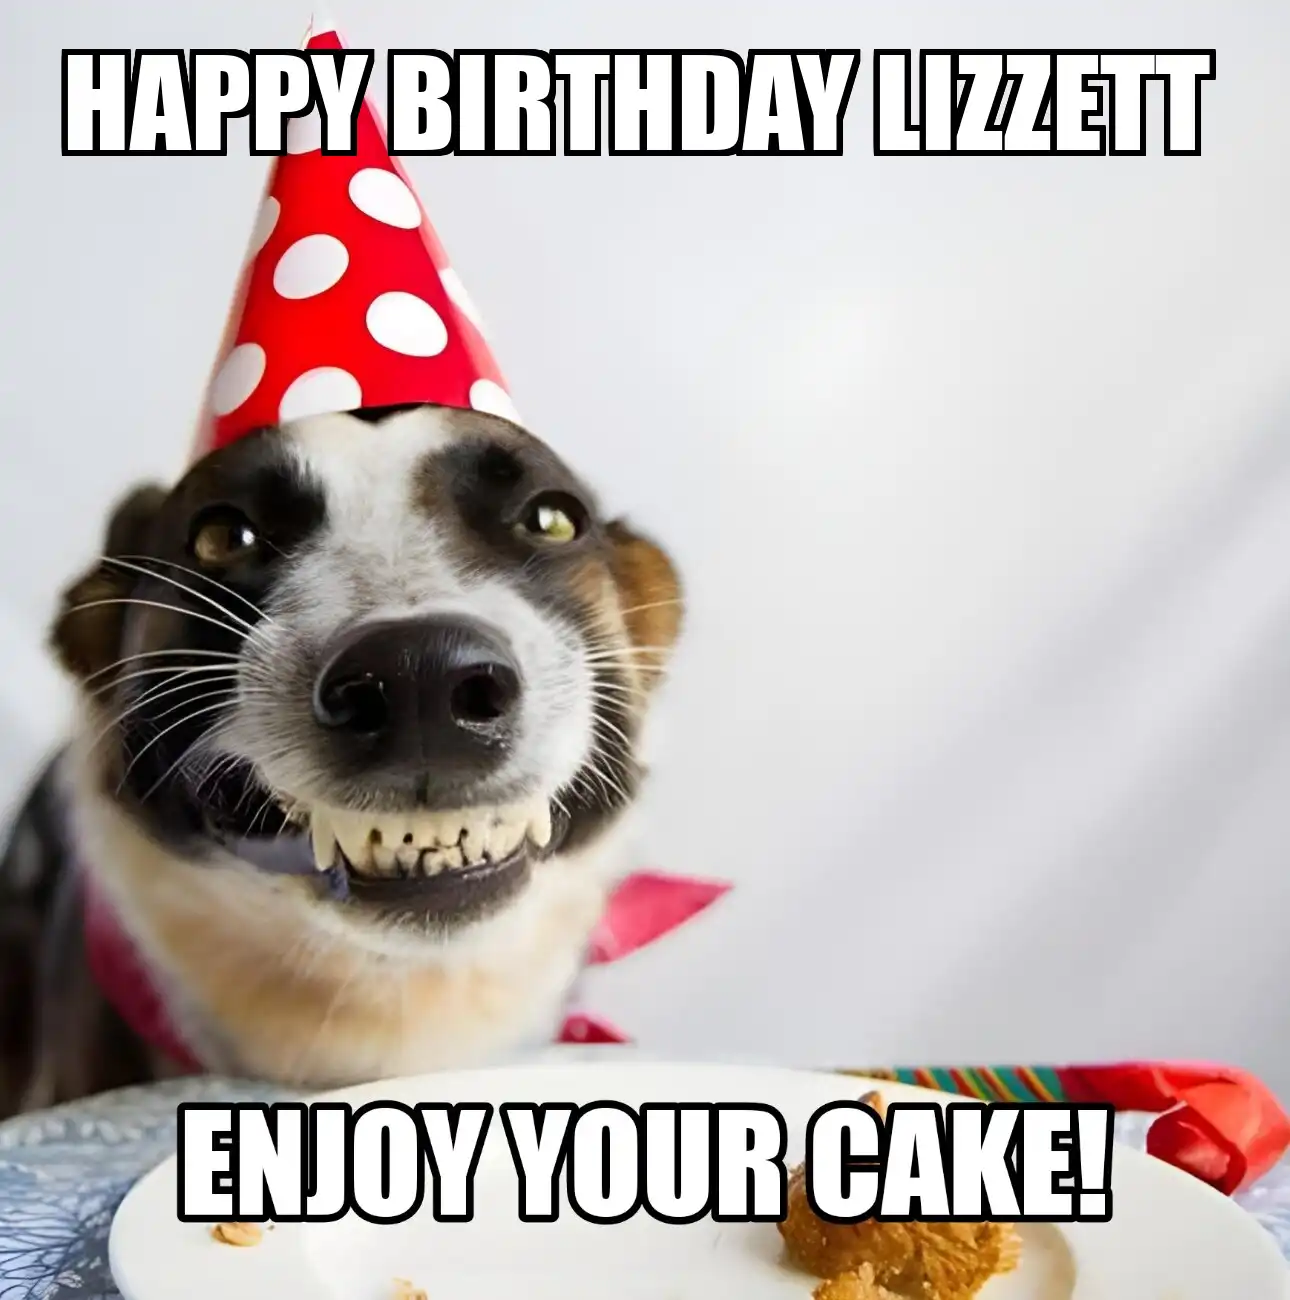 Happy Birthday Lizzett Enjoy Your Cake Dog Meme